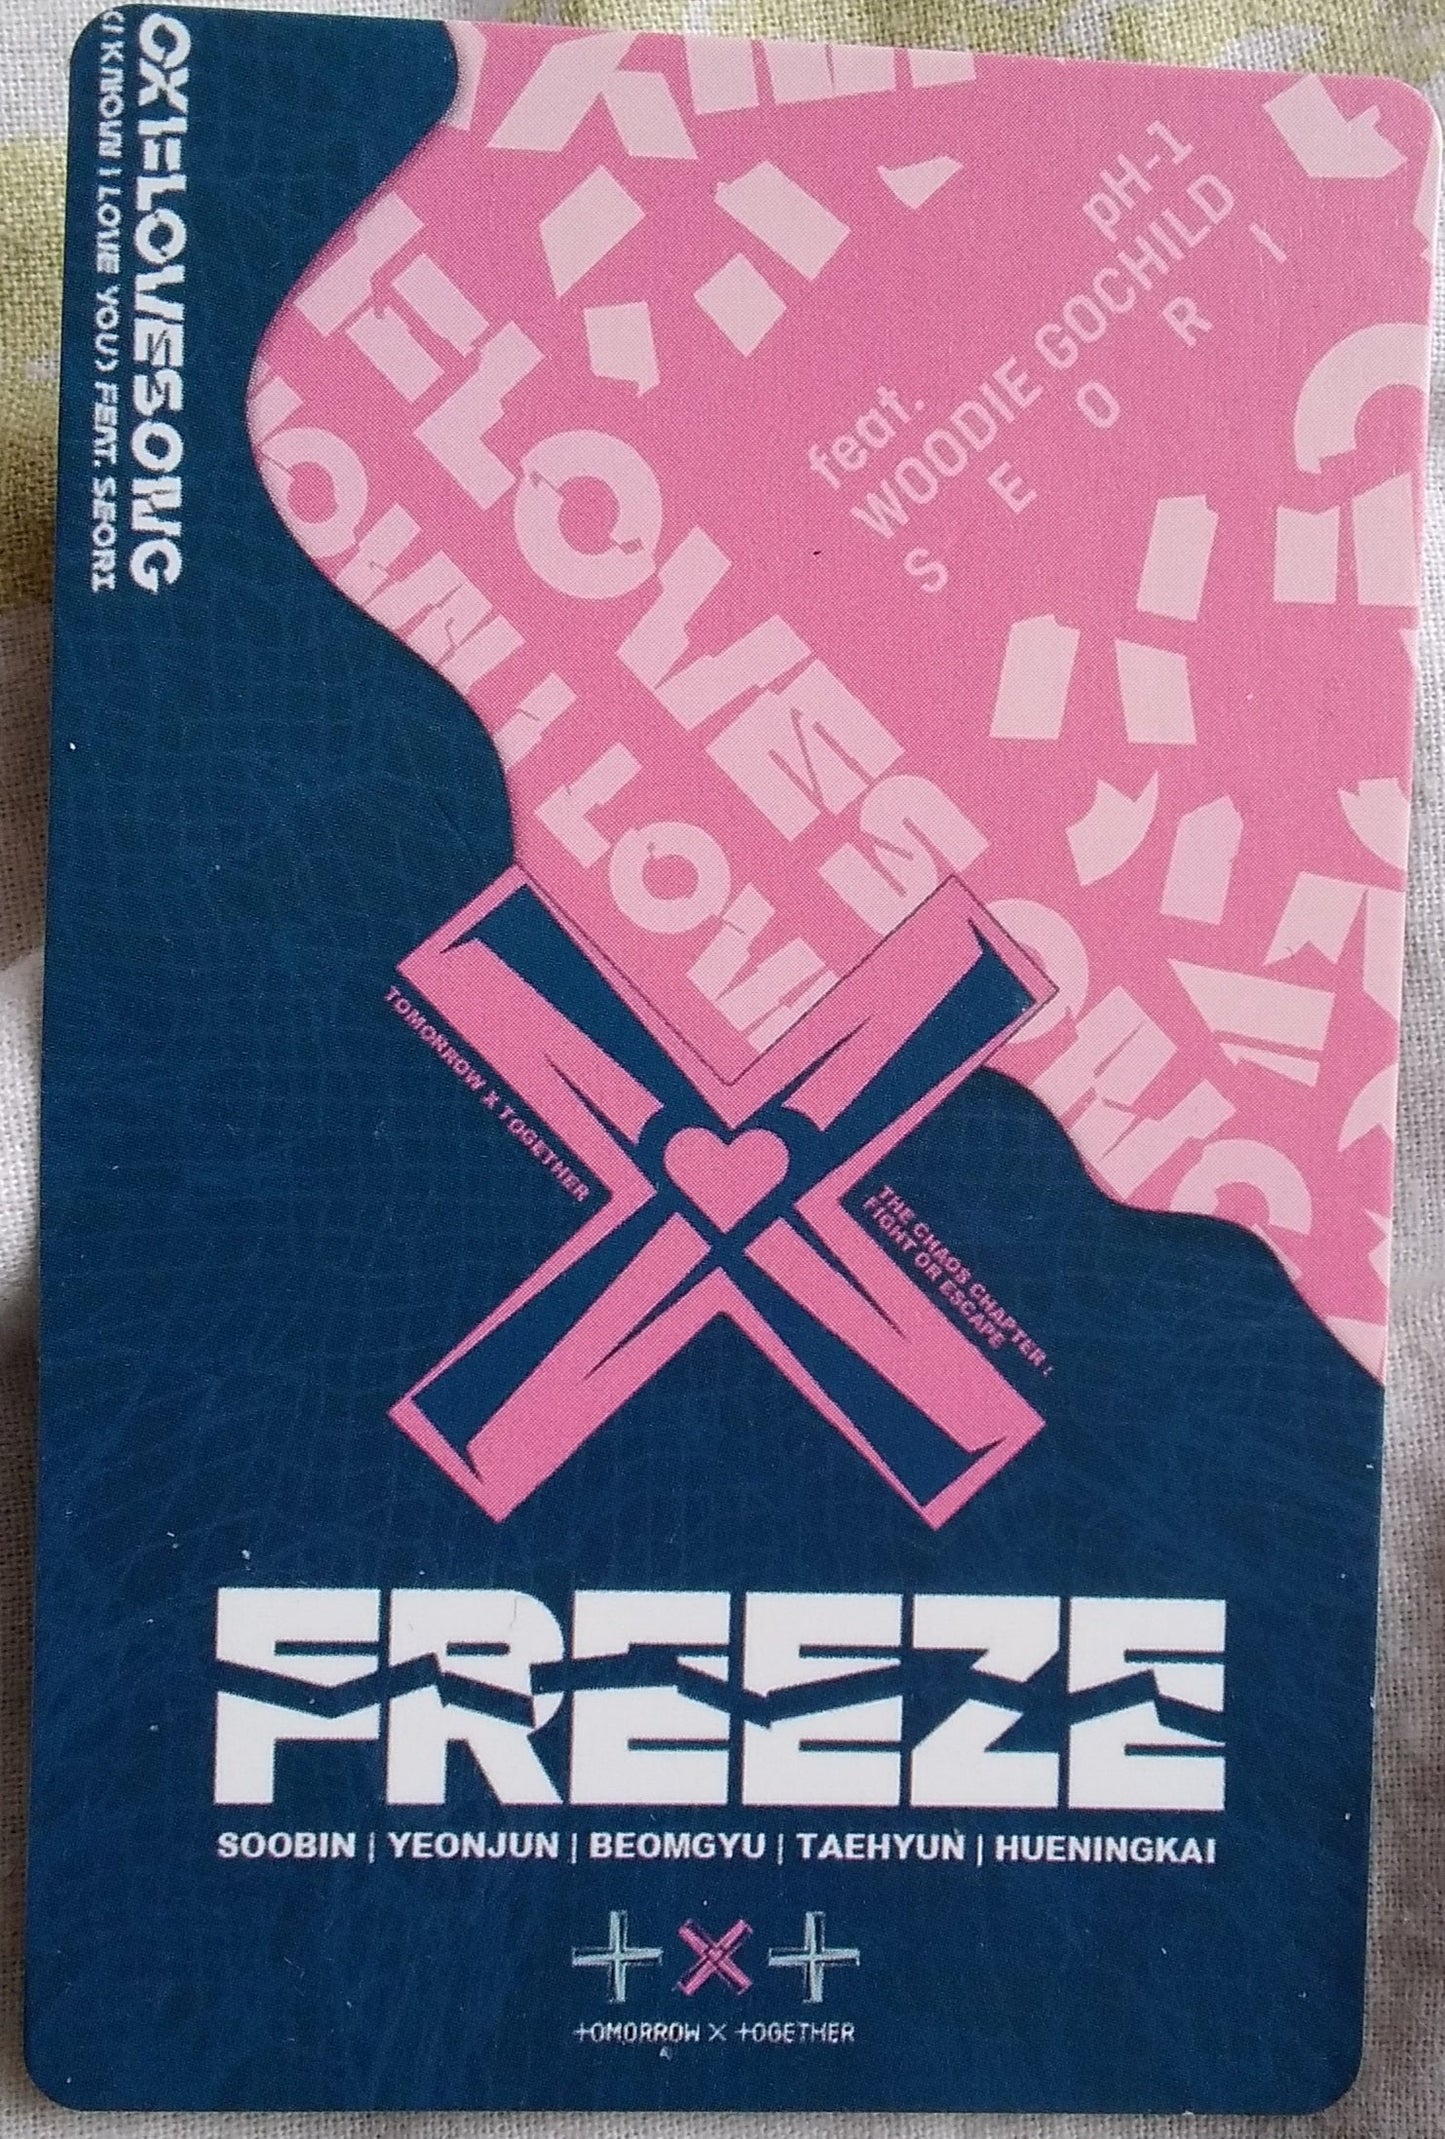 Photocard TXT  freeze  huening kai